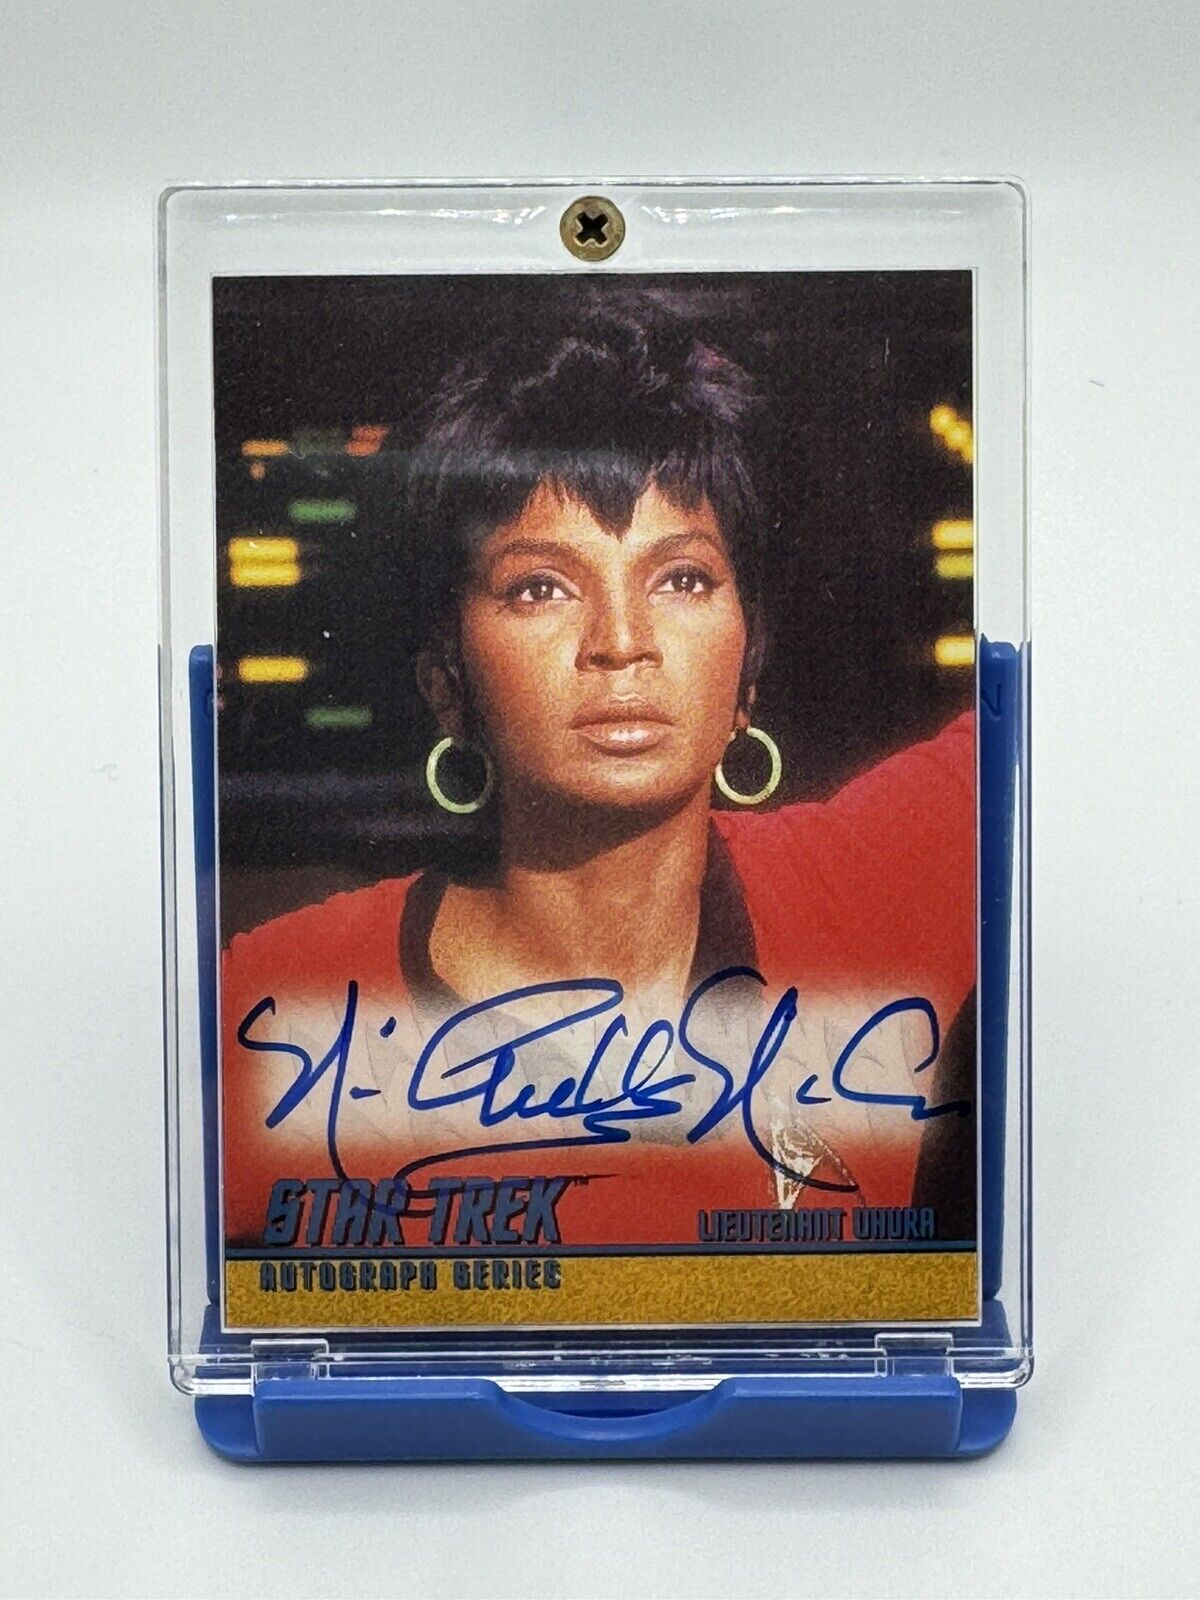 STAR TREK The Original Series 1997 Autograph Card A3 Nichelle Nichols as Uhura